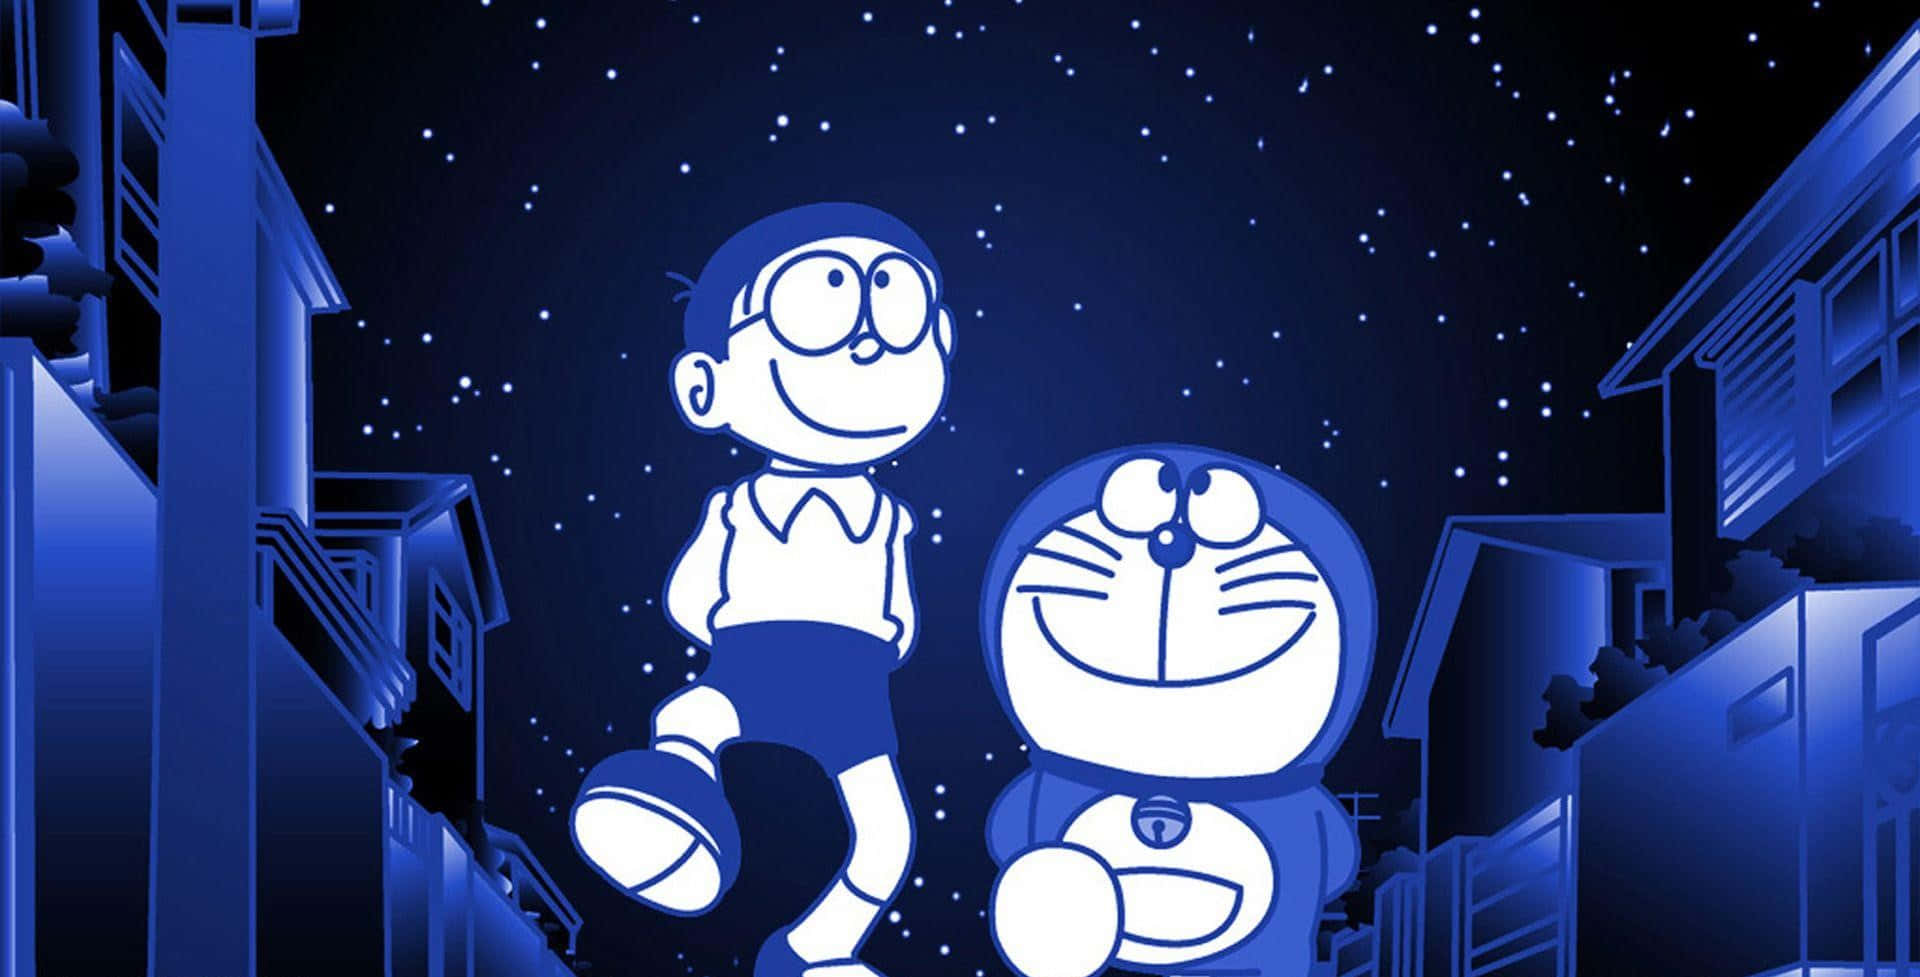 Doraemonbringt Glück Und Freundschaft.